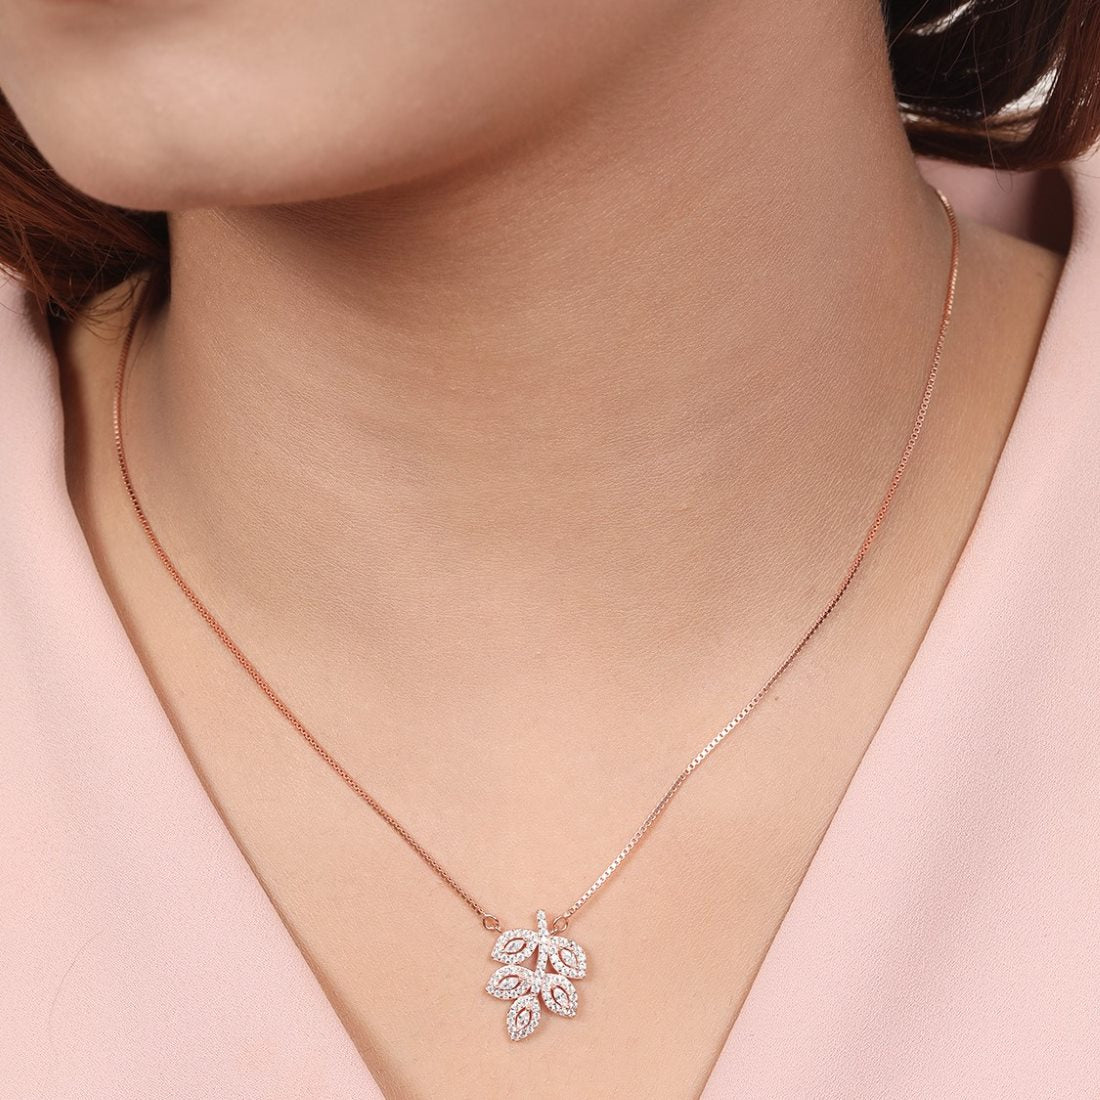 Ethereal Elegance 925 Sterling Silver Rose Gold-Plated Leaf Necklace